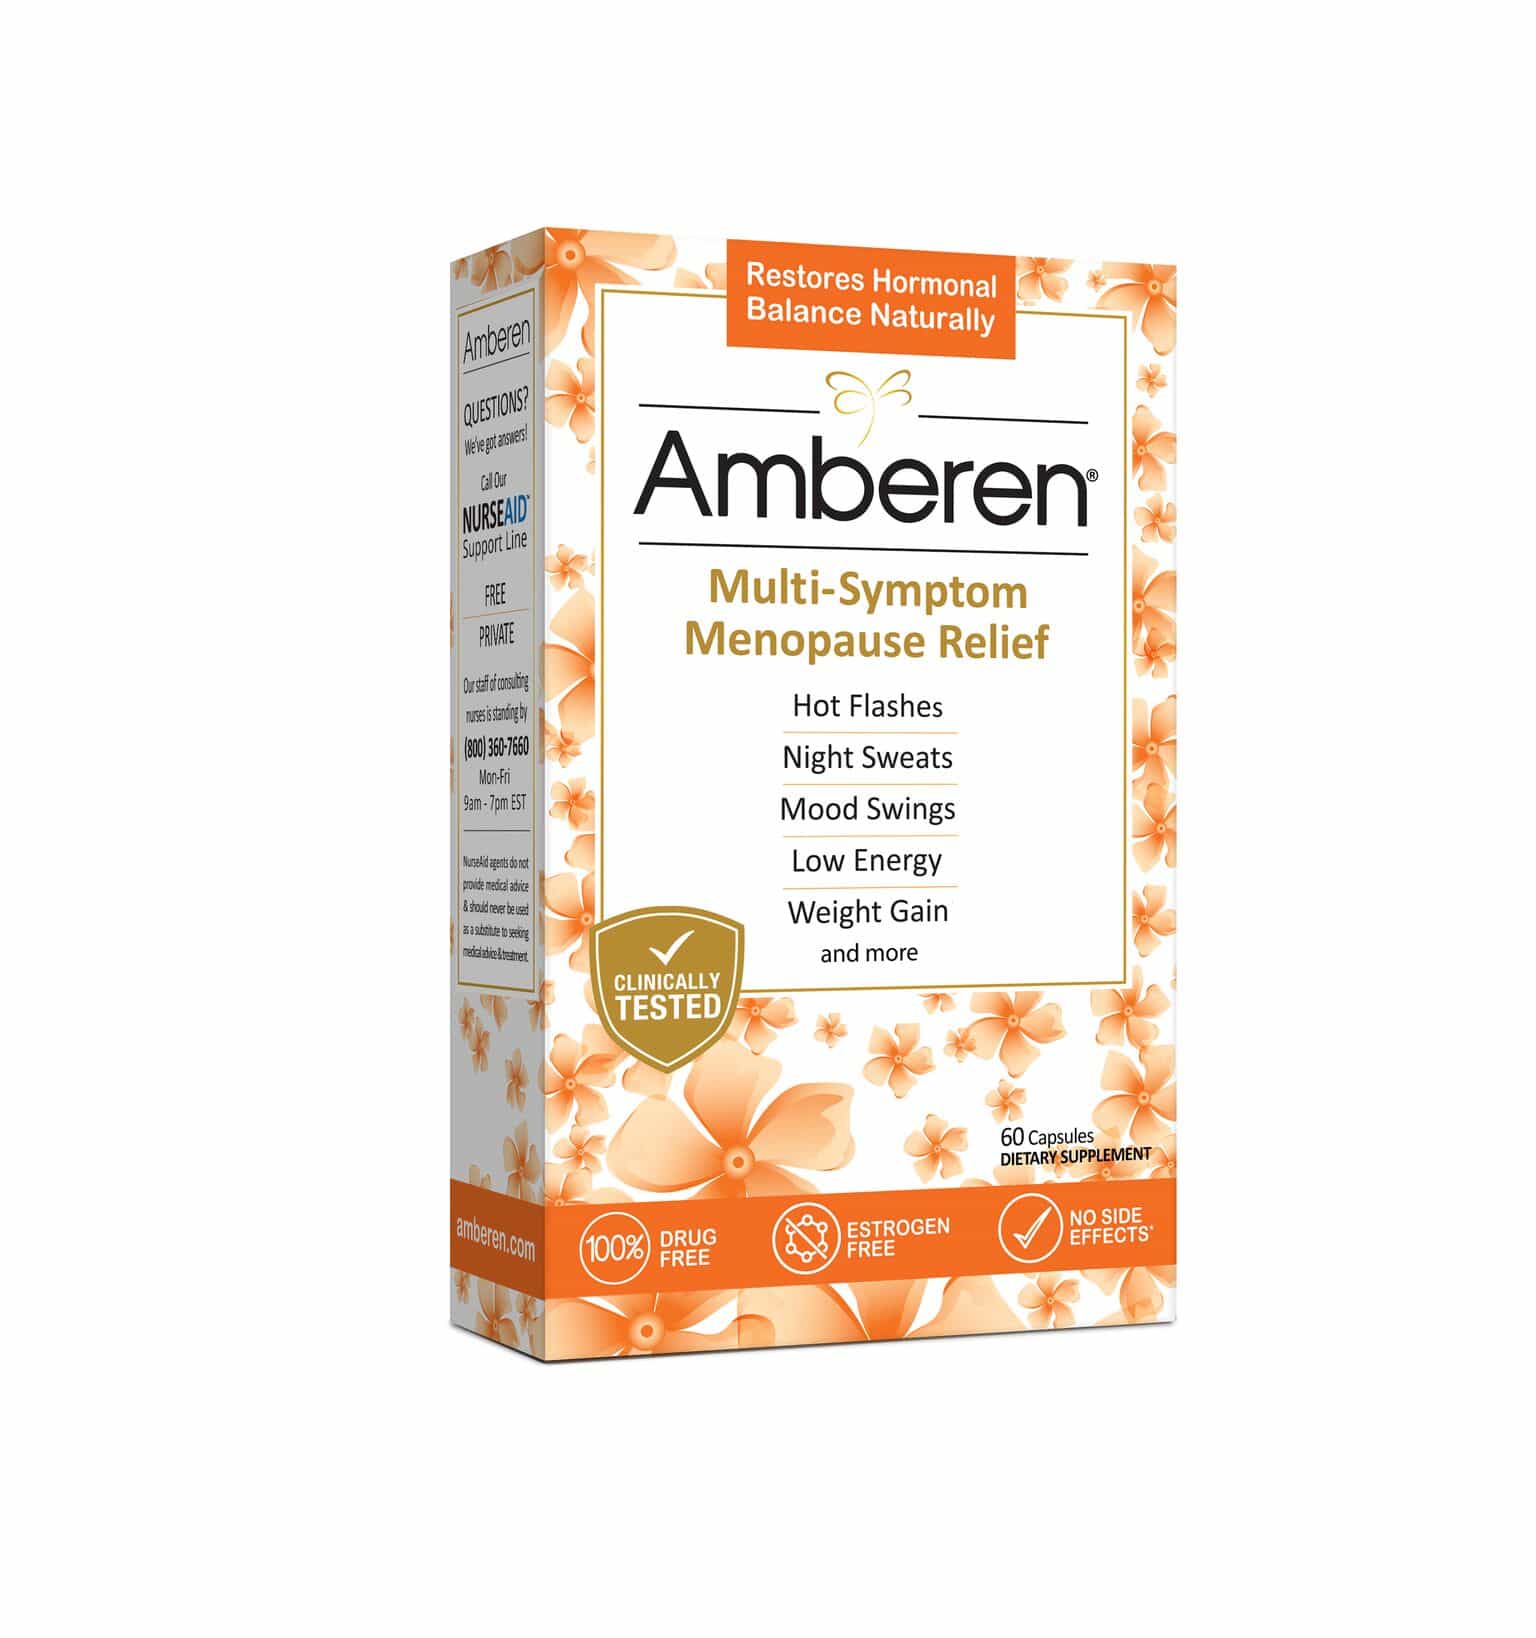 Amberen Box